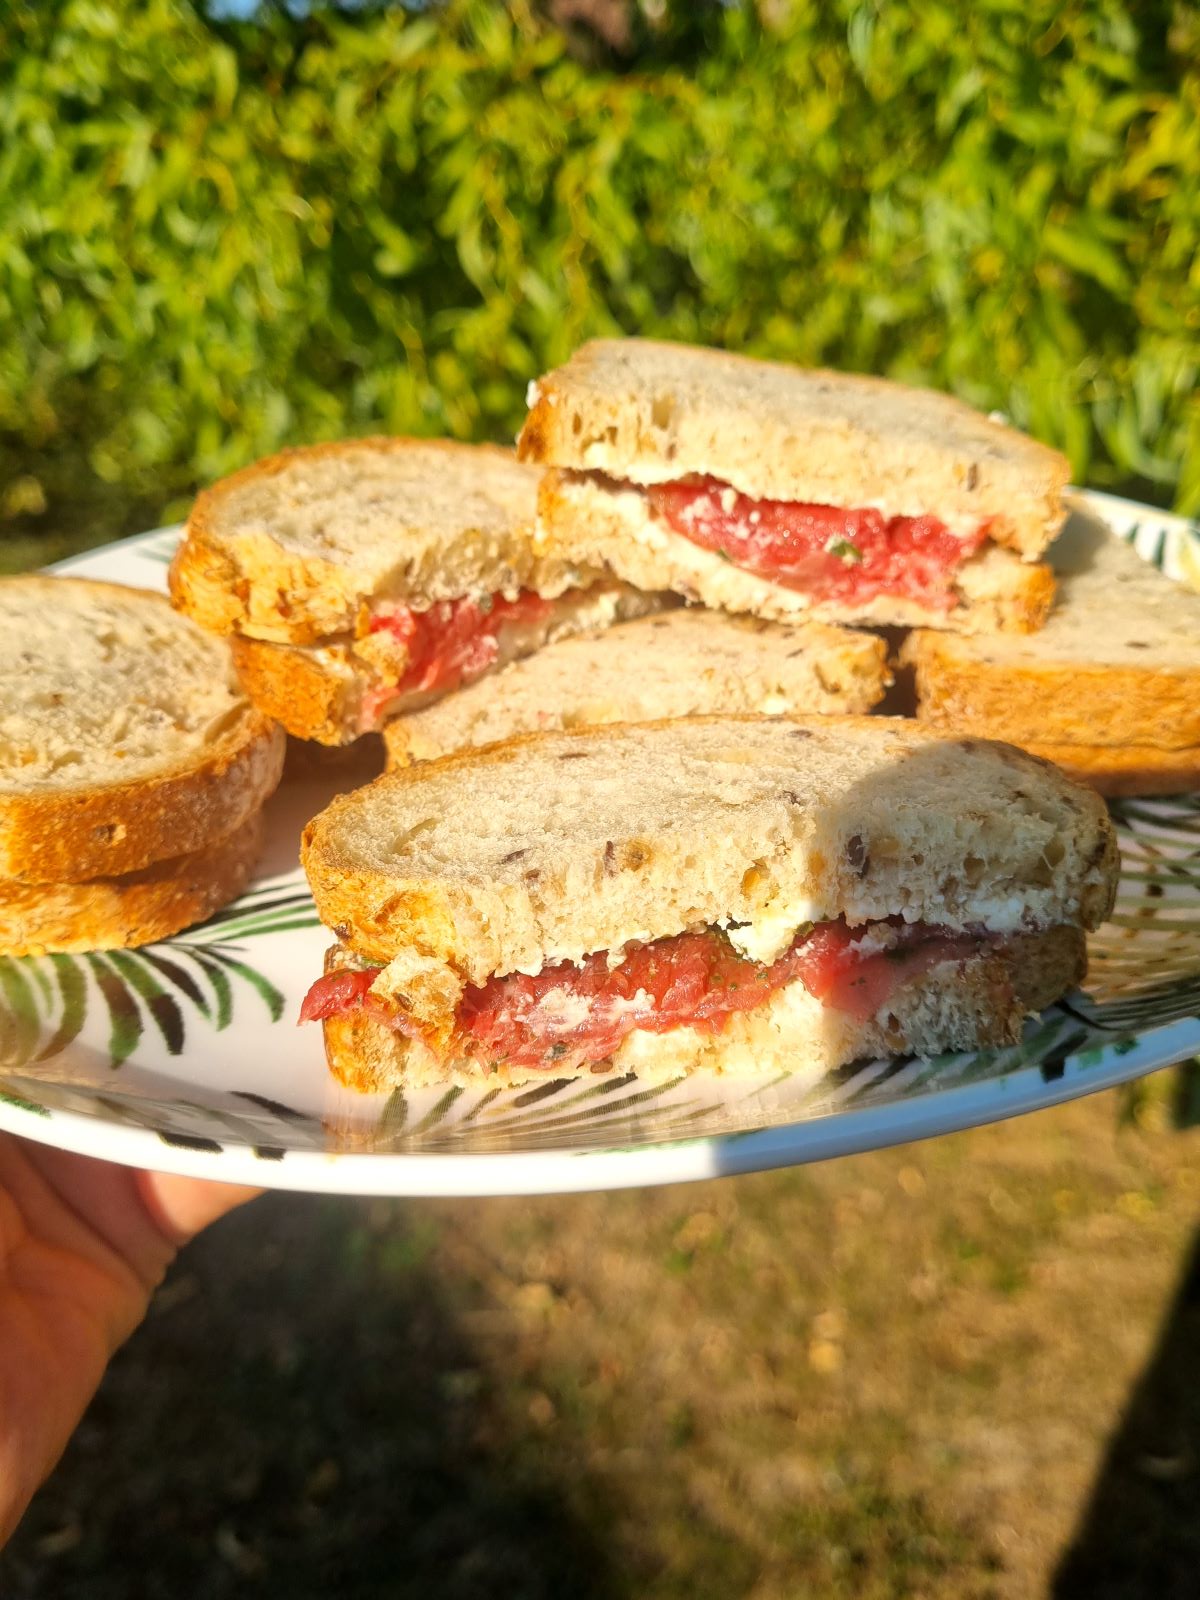 Sandwich au carapccio de boeuf et fromage frais